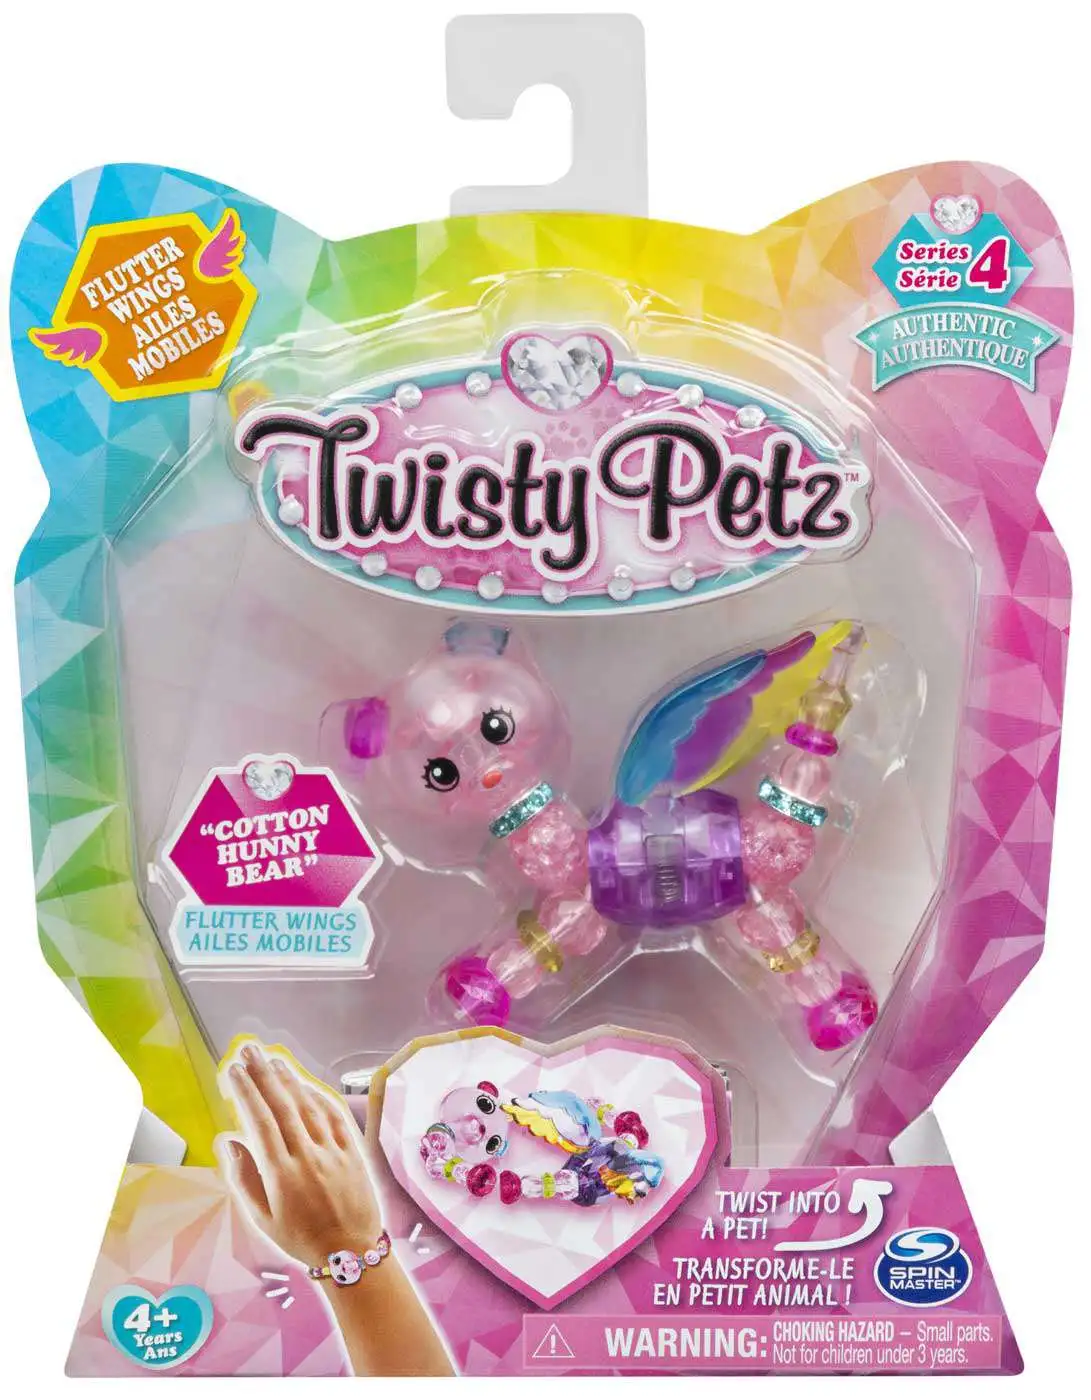 Twisty Petz Series 4 Cotton Hunny Bear Bracelet Spin Master - ToyWiz